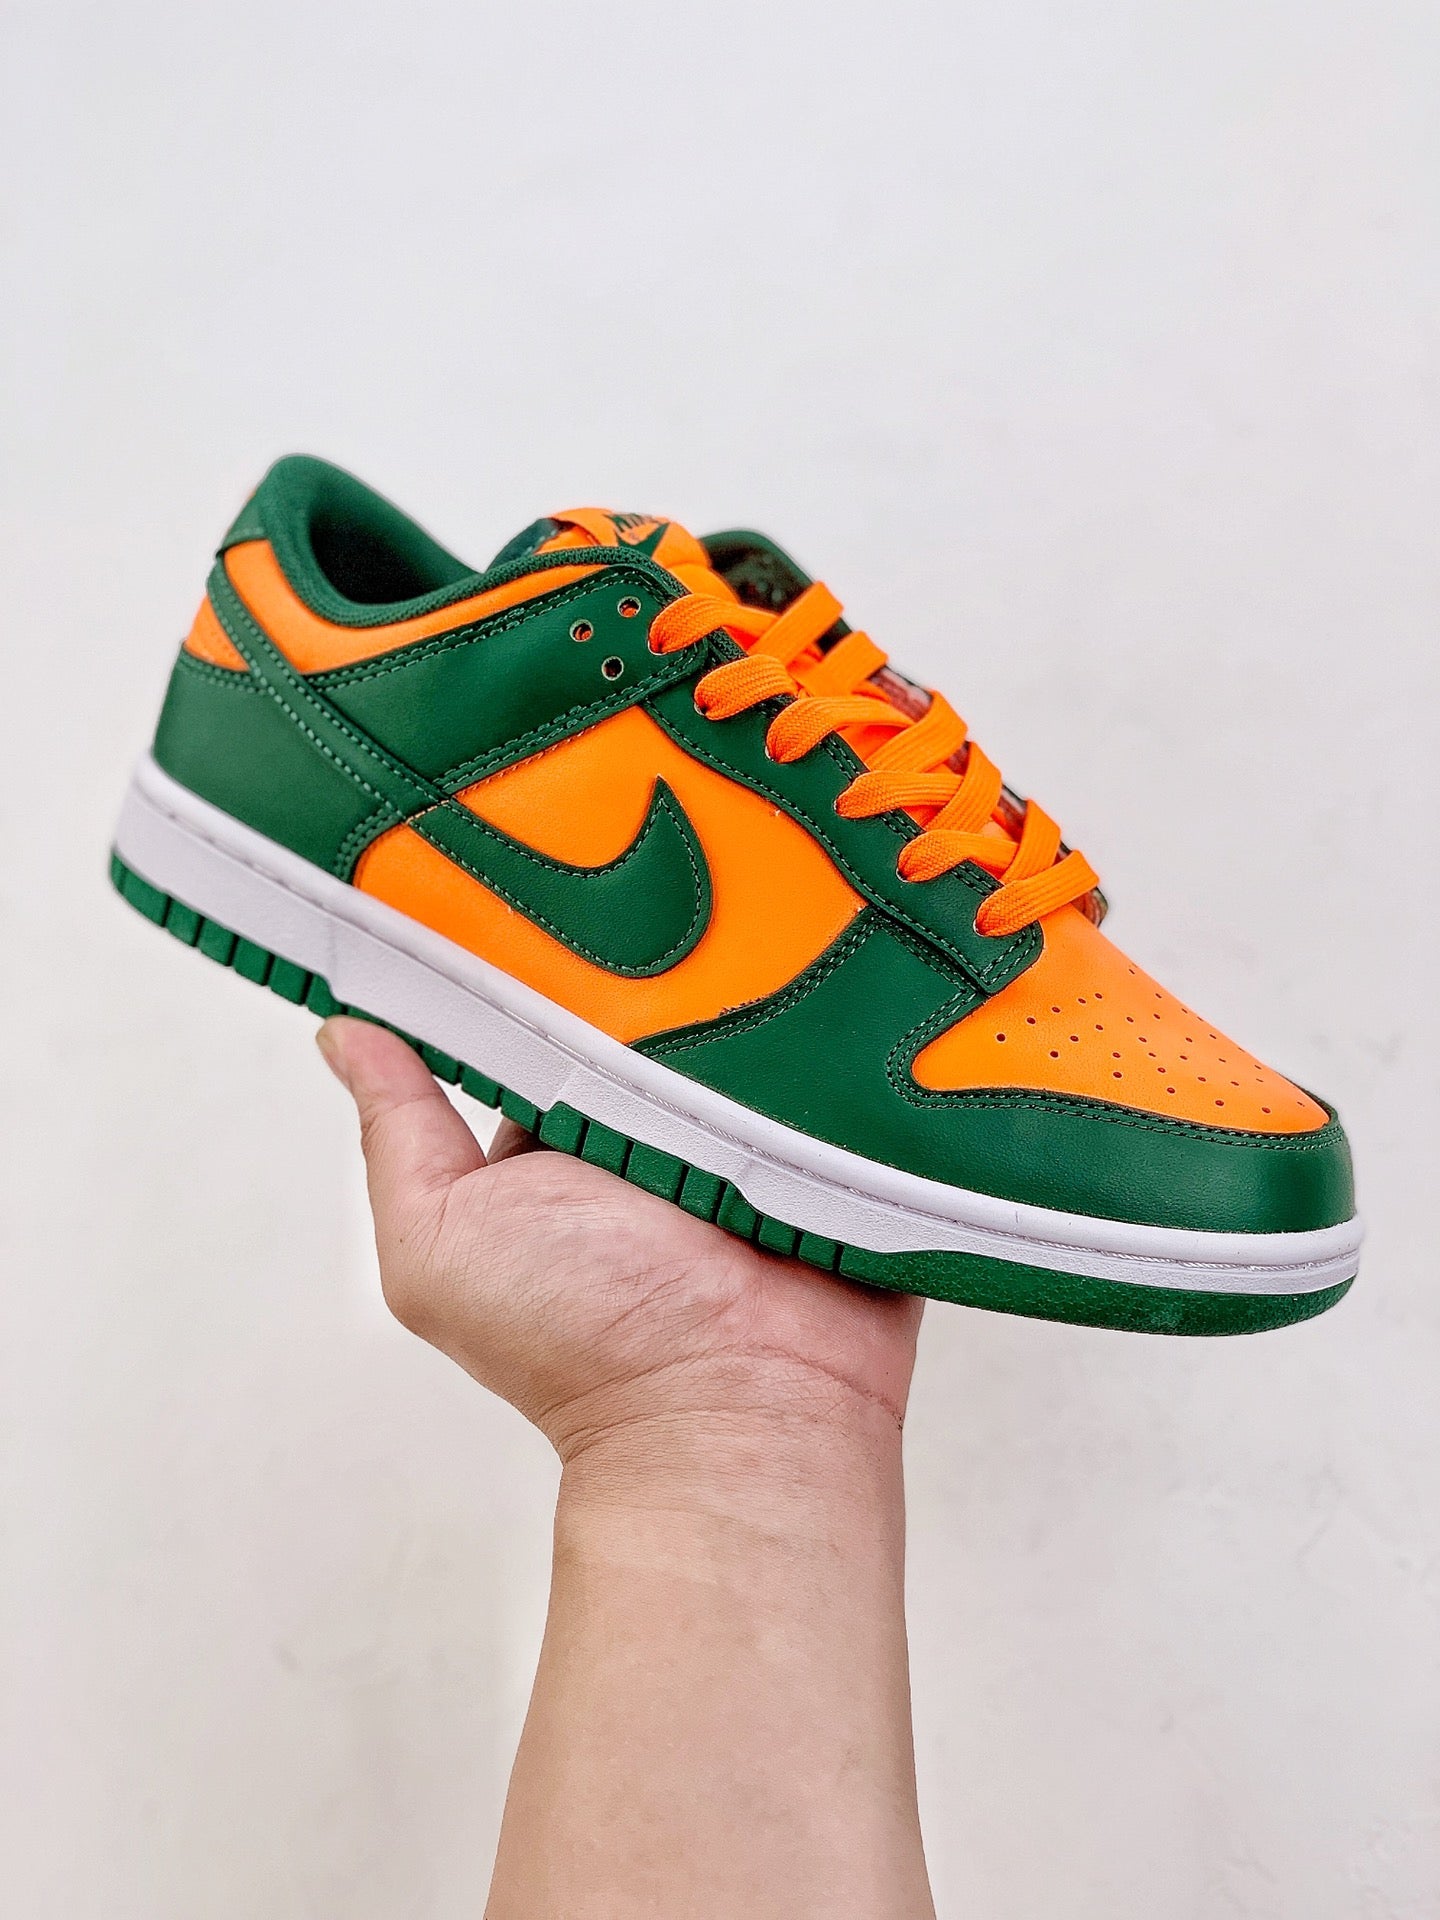 Nike SB Dunk Low "Green Orange"